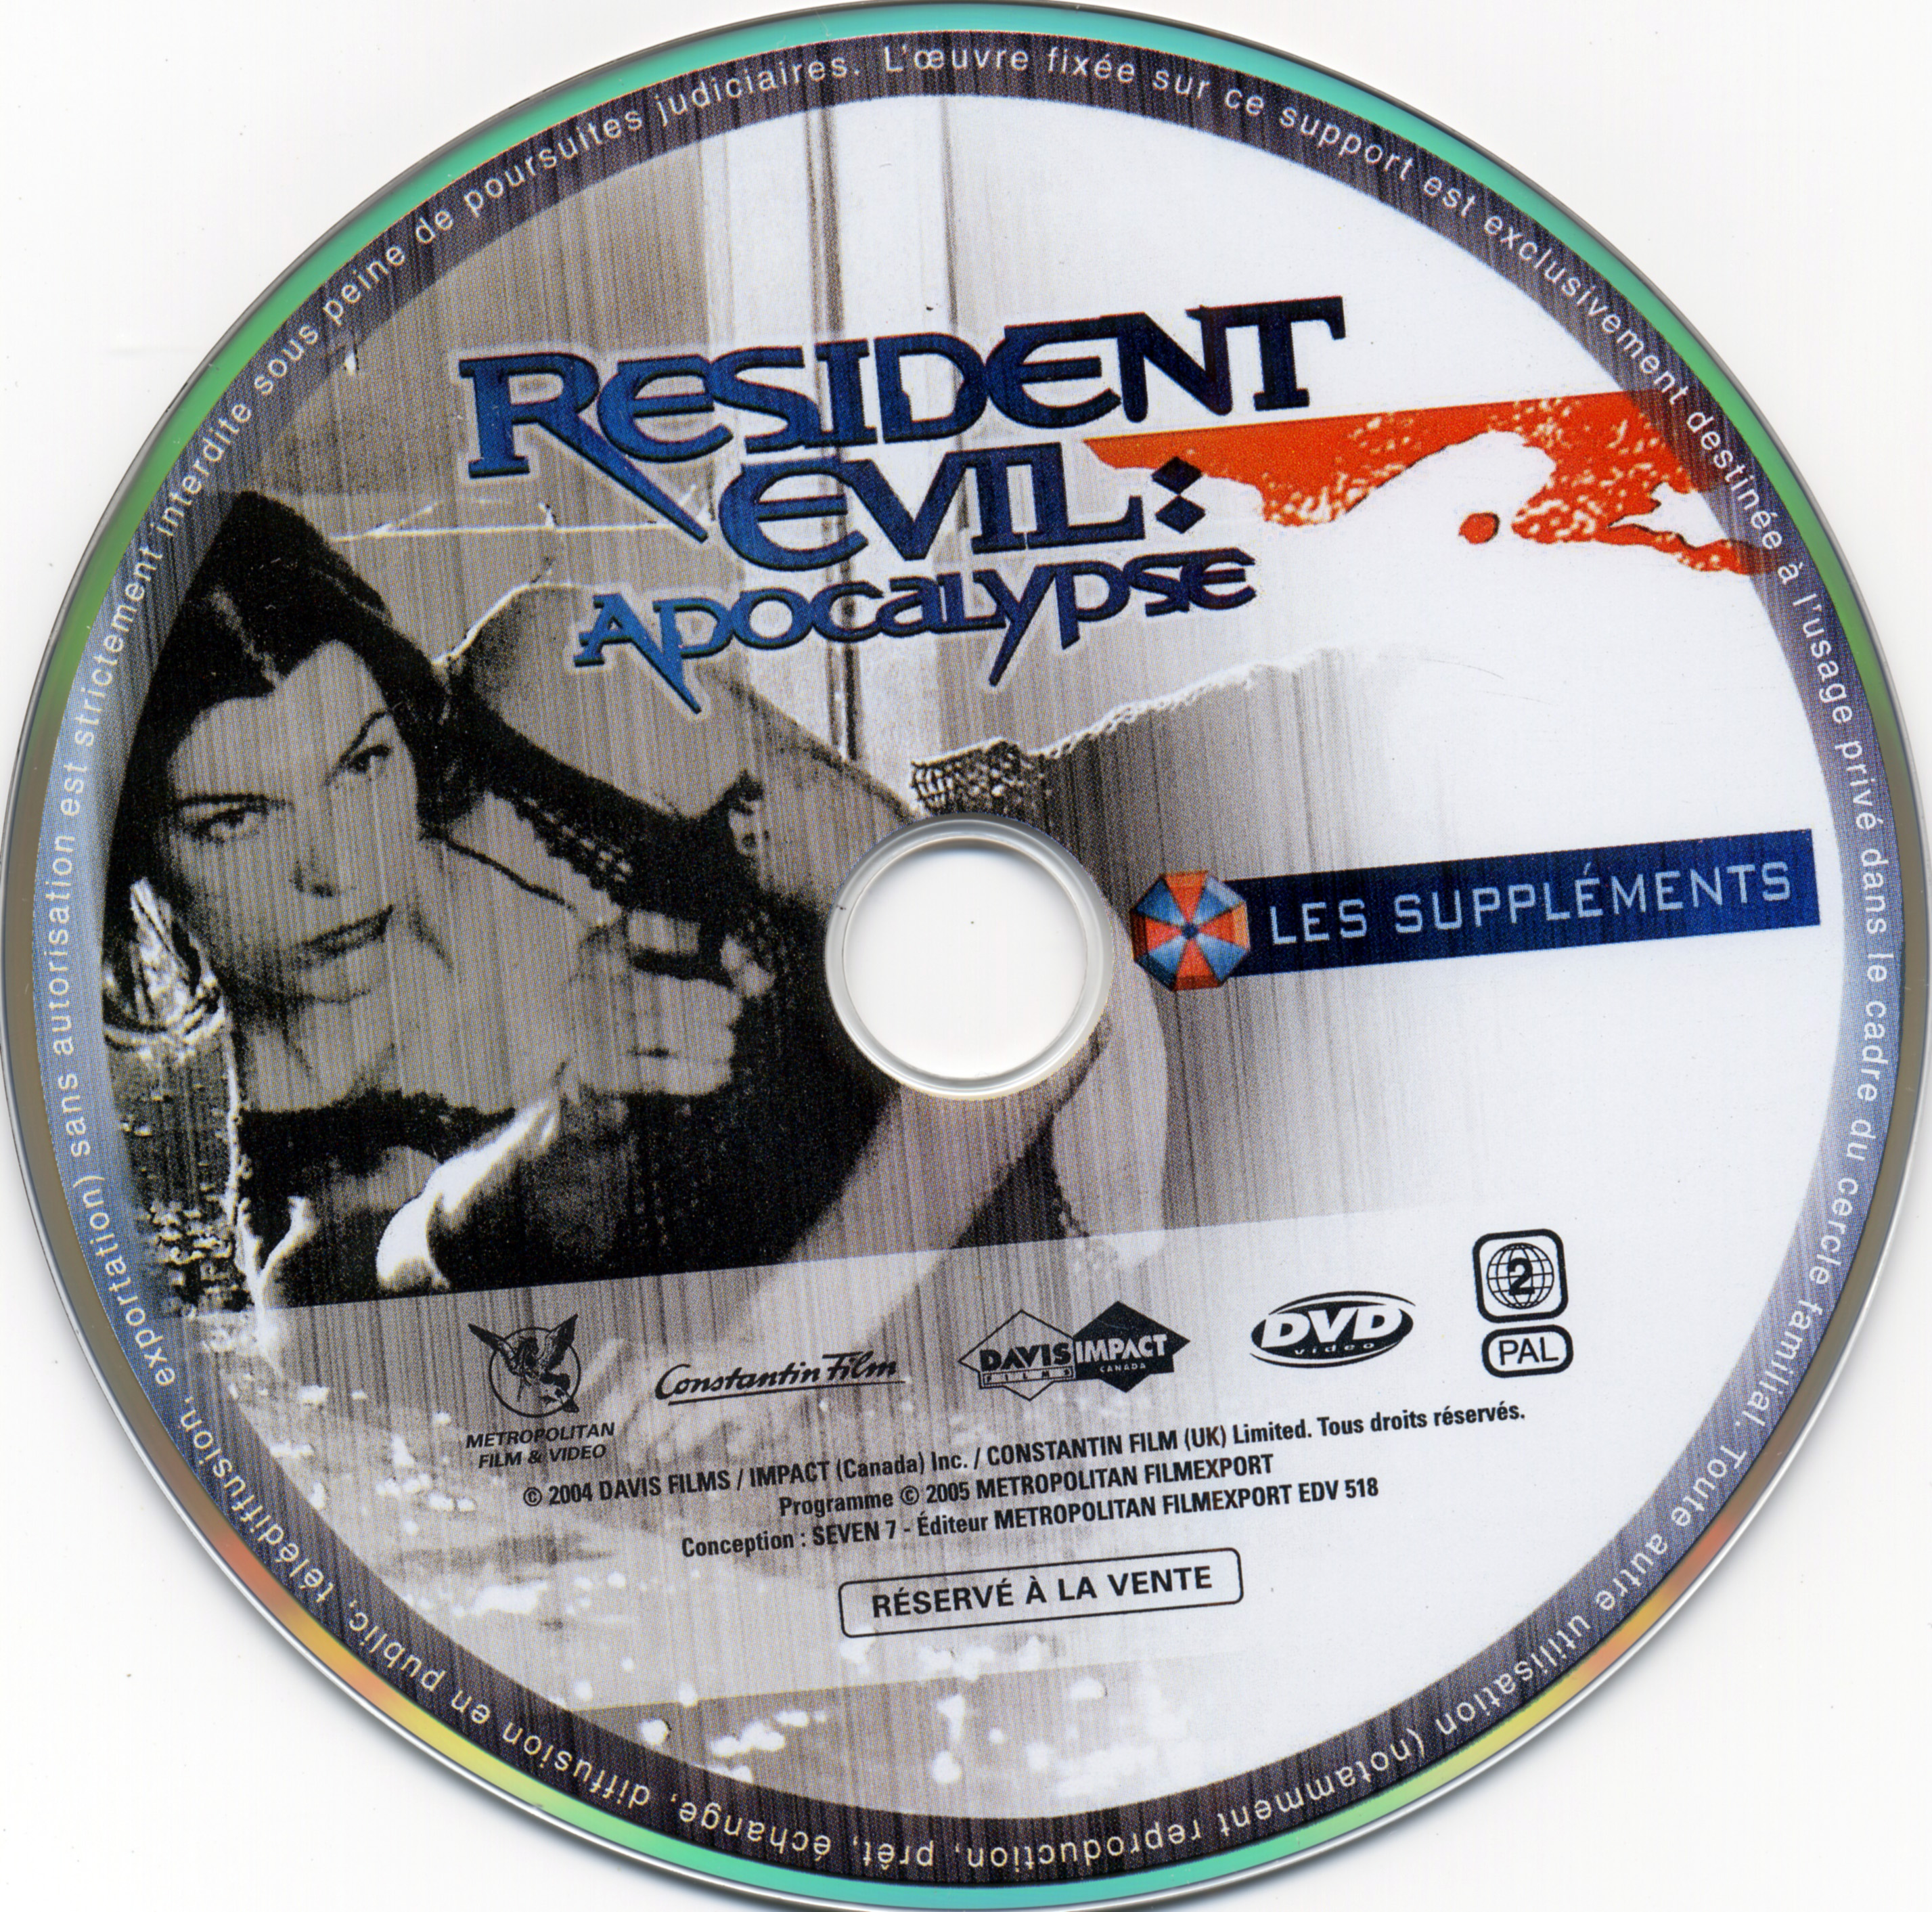 Resident evil apocalypse DISC 2